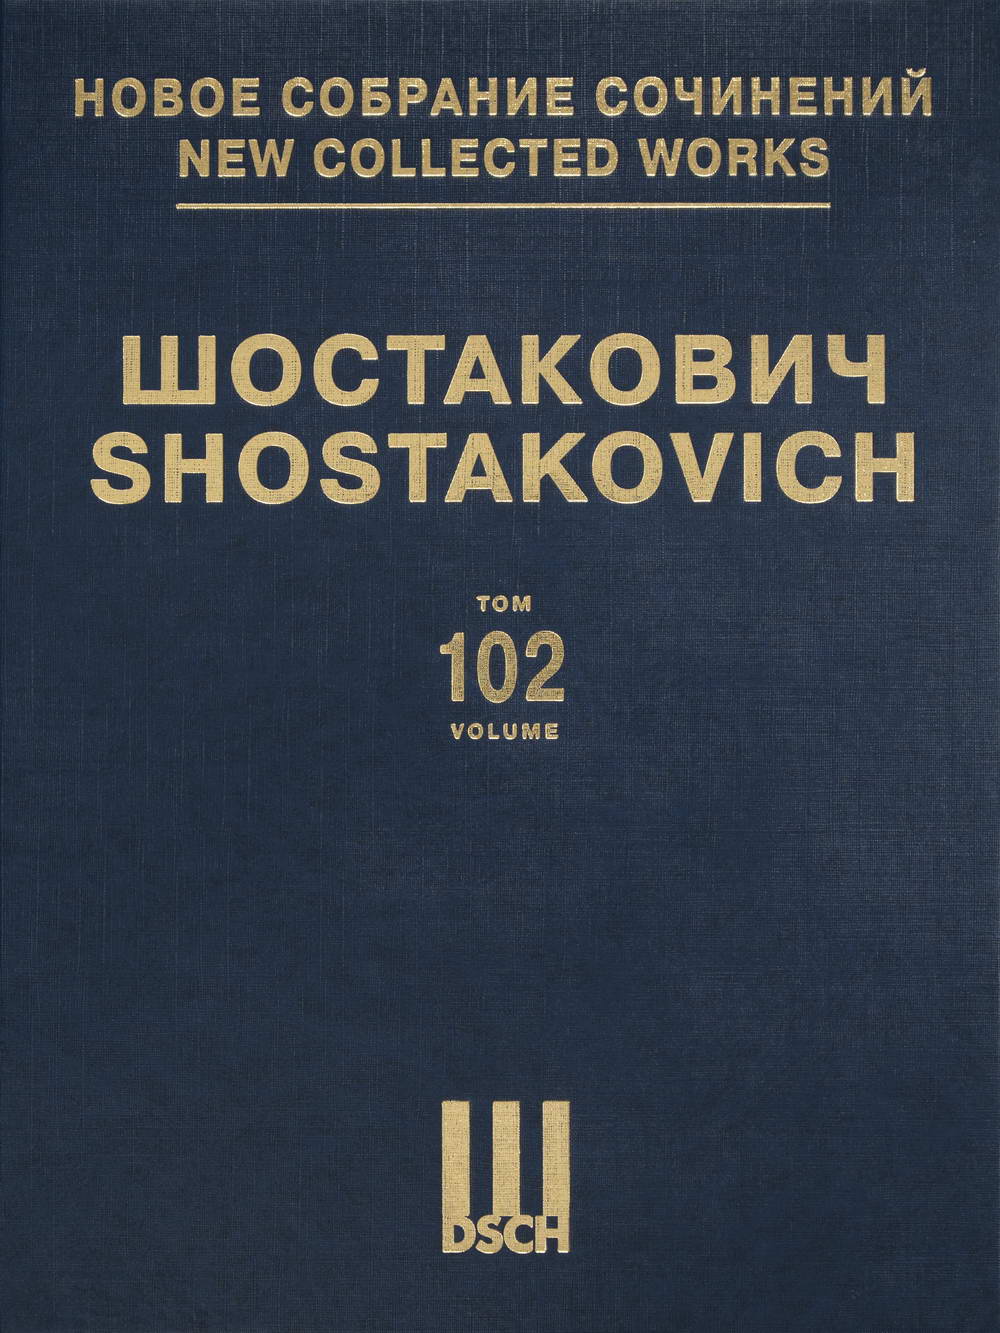 Dmitri Shostakovich’s String Quartets Nos. 7-9